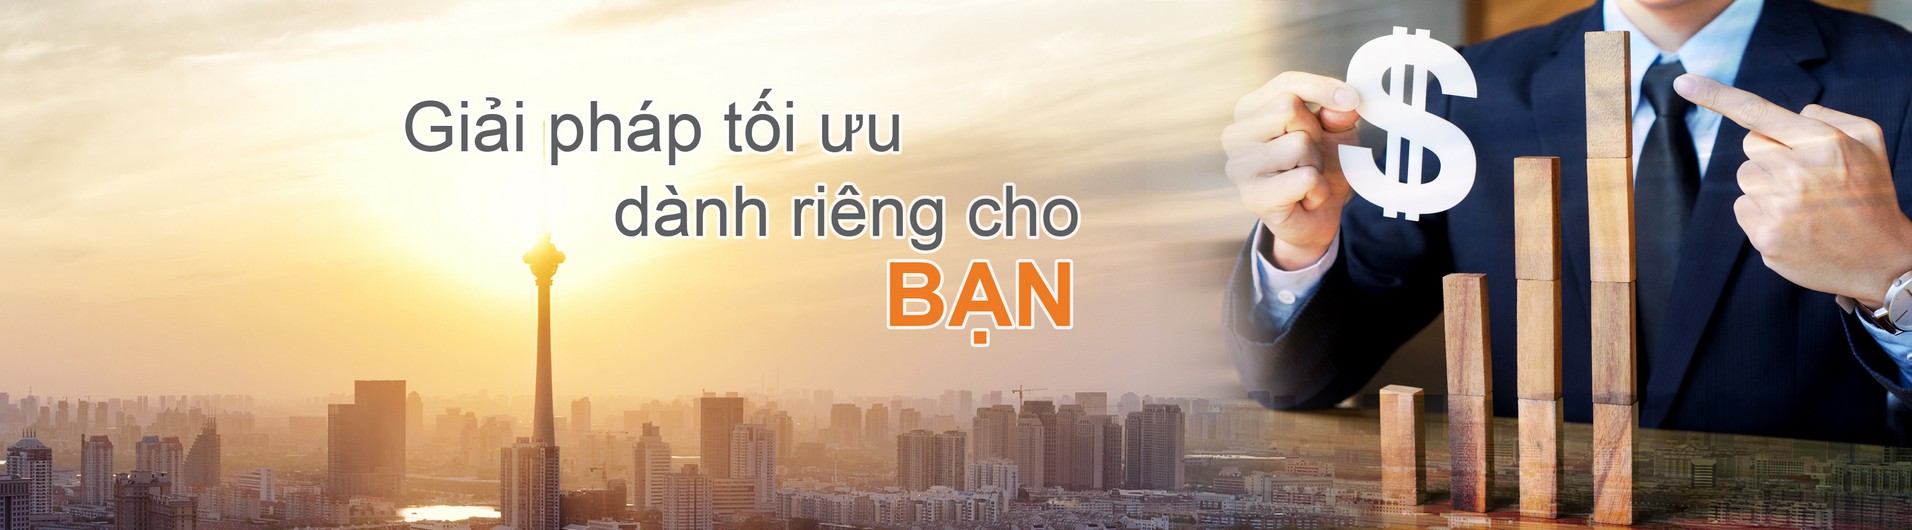 3-Banner-Viet